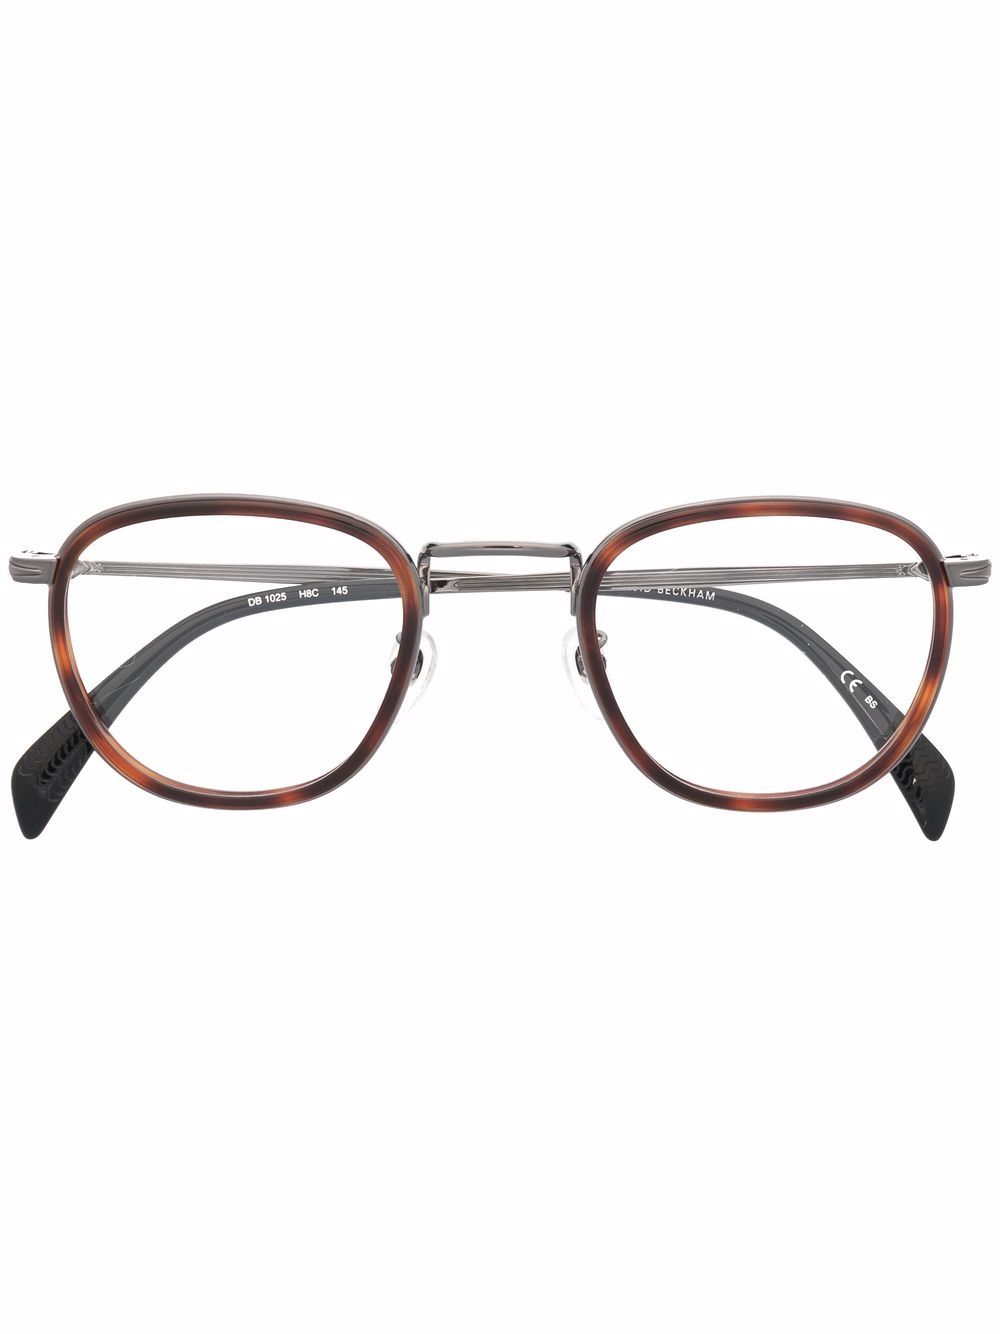 фото Eyewear by david beckham очки в круглой оправе черепаховой расцветки